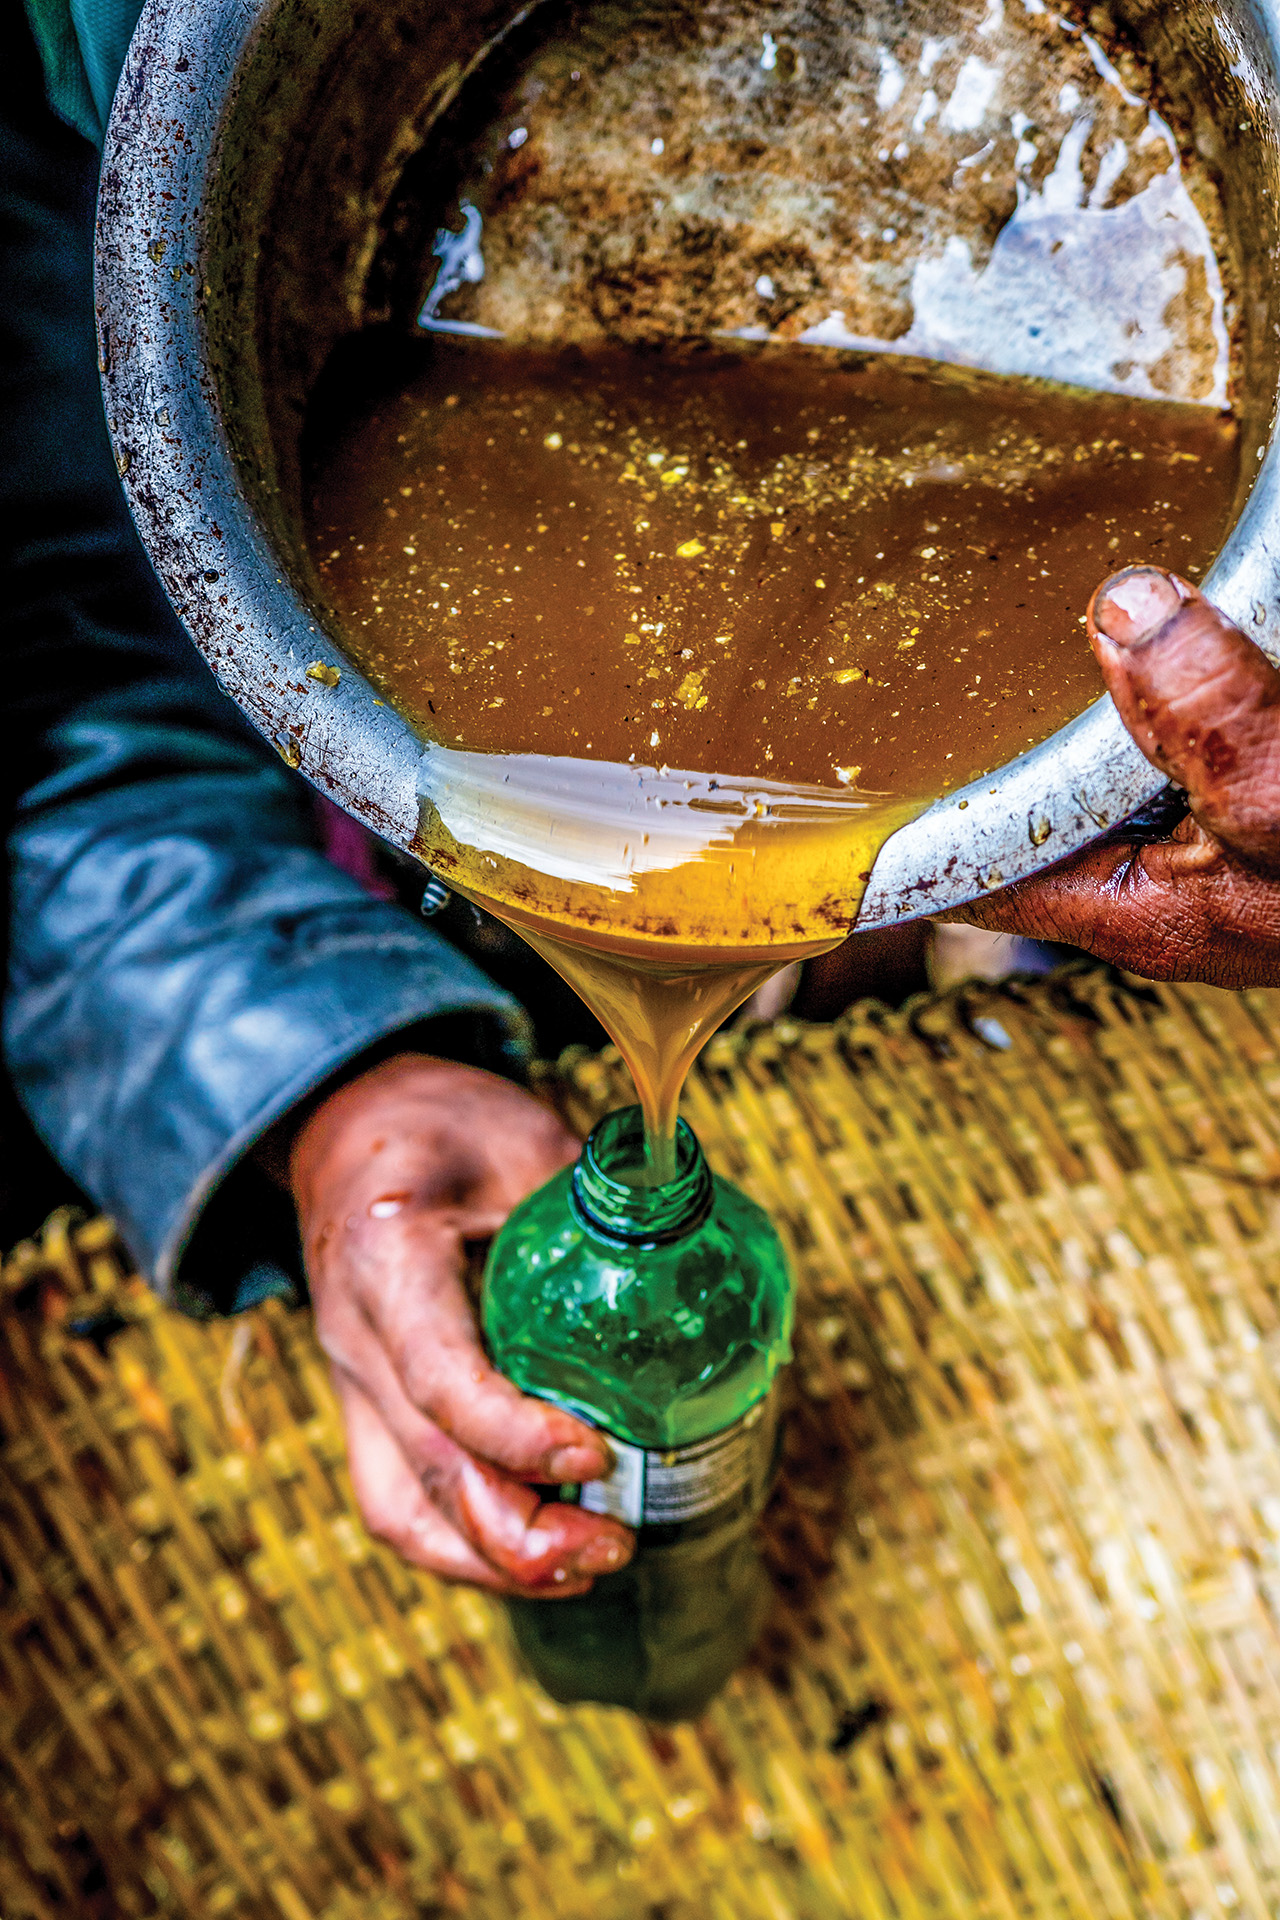 مهنة جمع العسل جزءا حيويا من ثقافة شعب النيبال